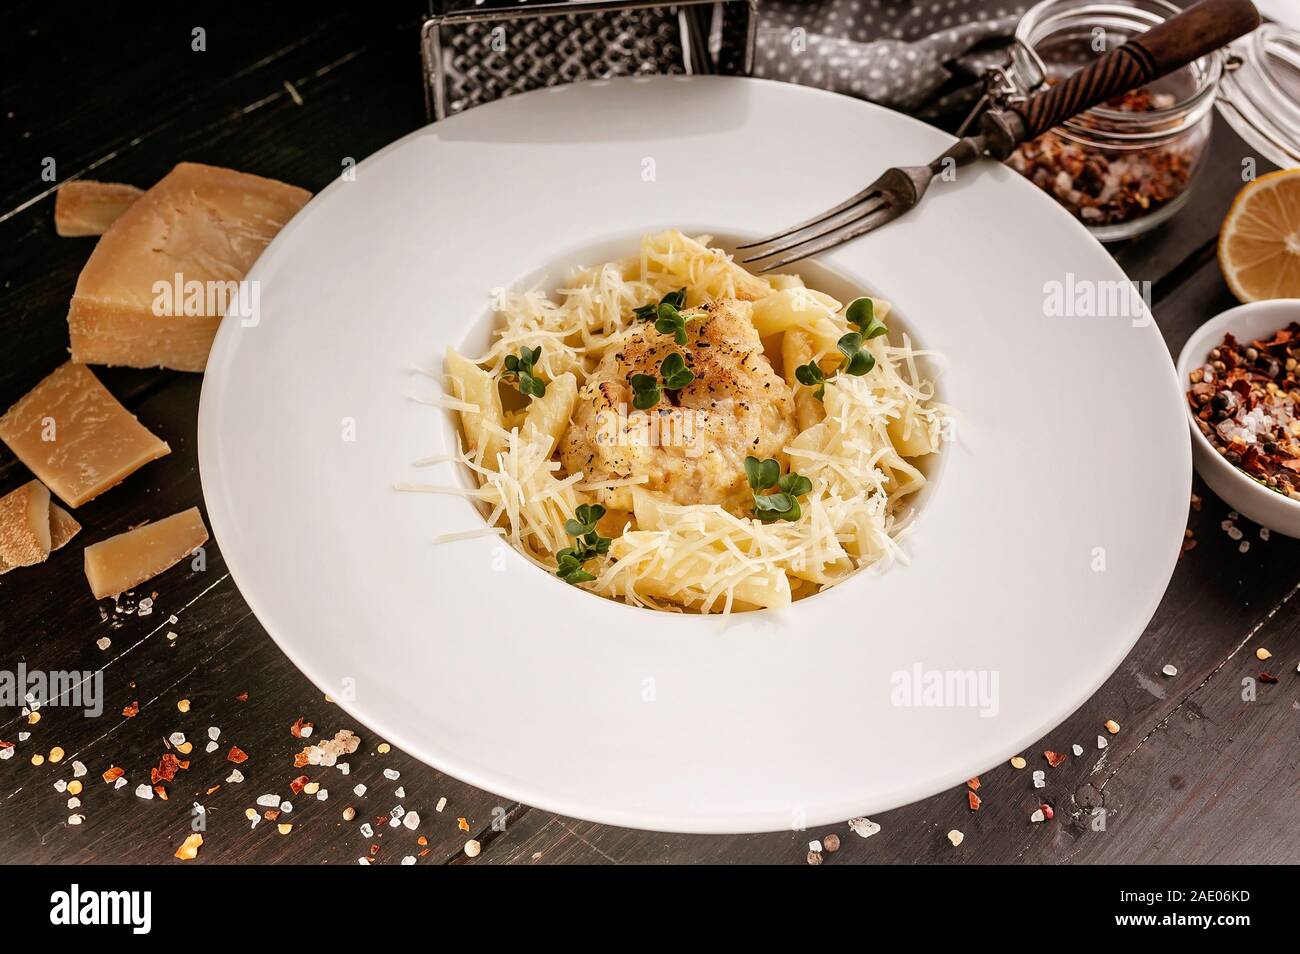 Cibo: fotografia di close-up smerlo con pasta italiana. Ricette di cucina mediterranea. Piatti a base di frutti di mare freschi Foto Stock